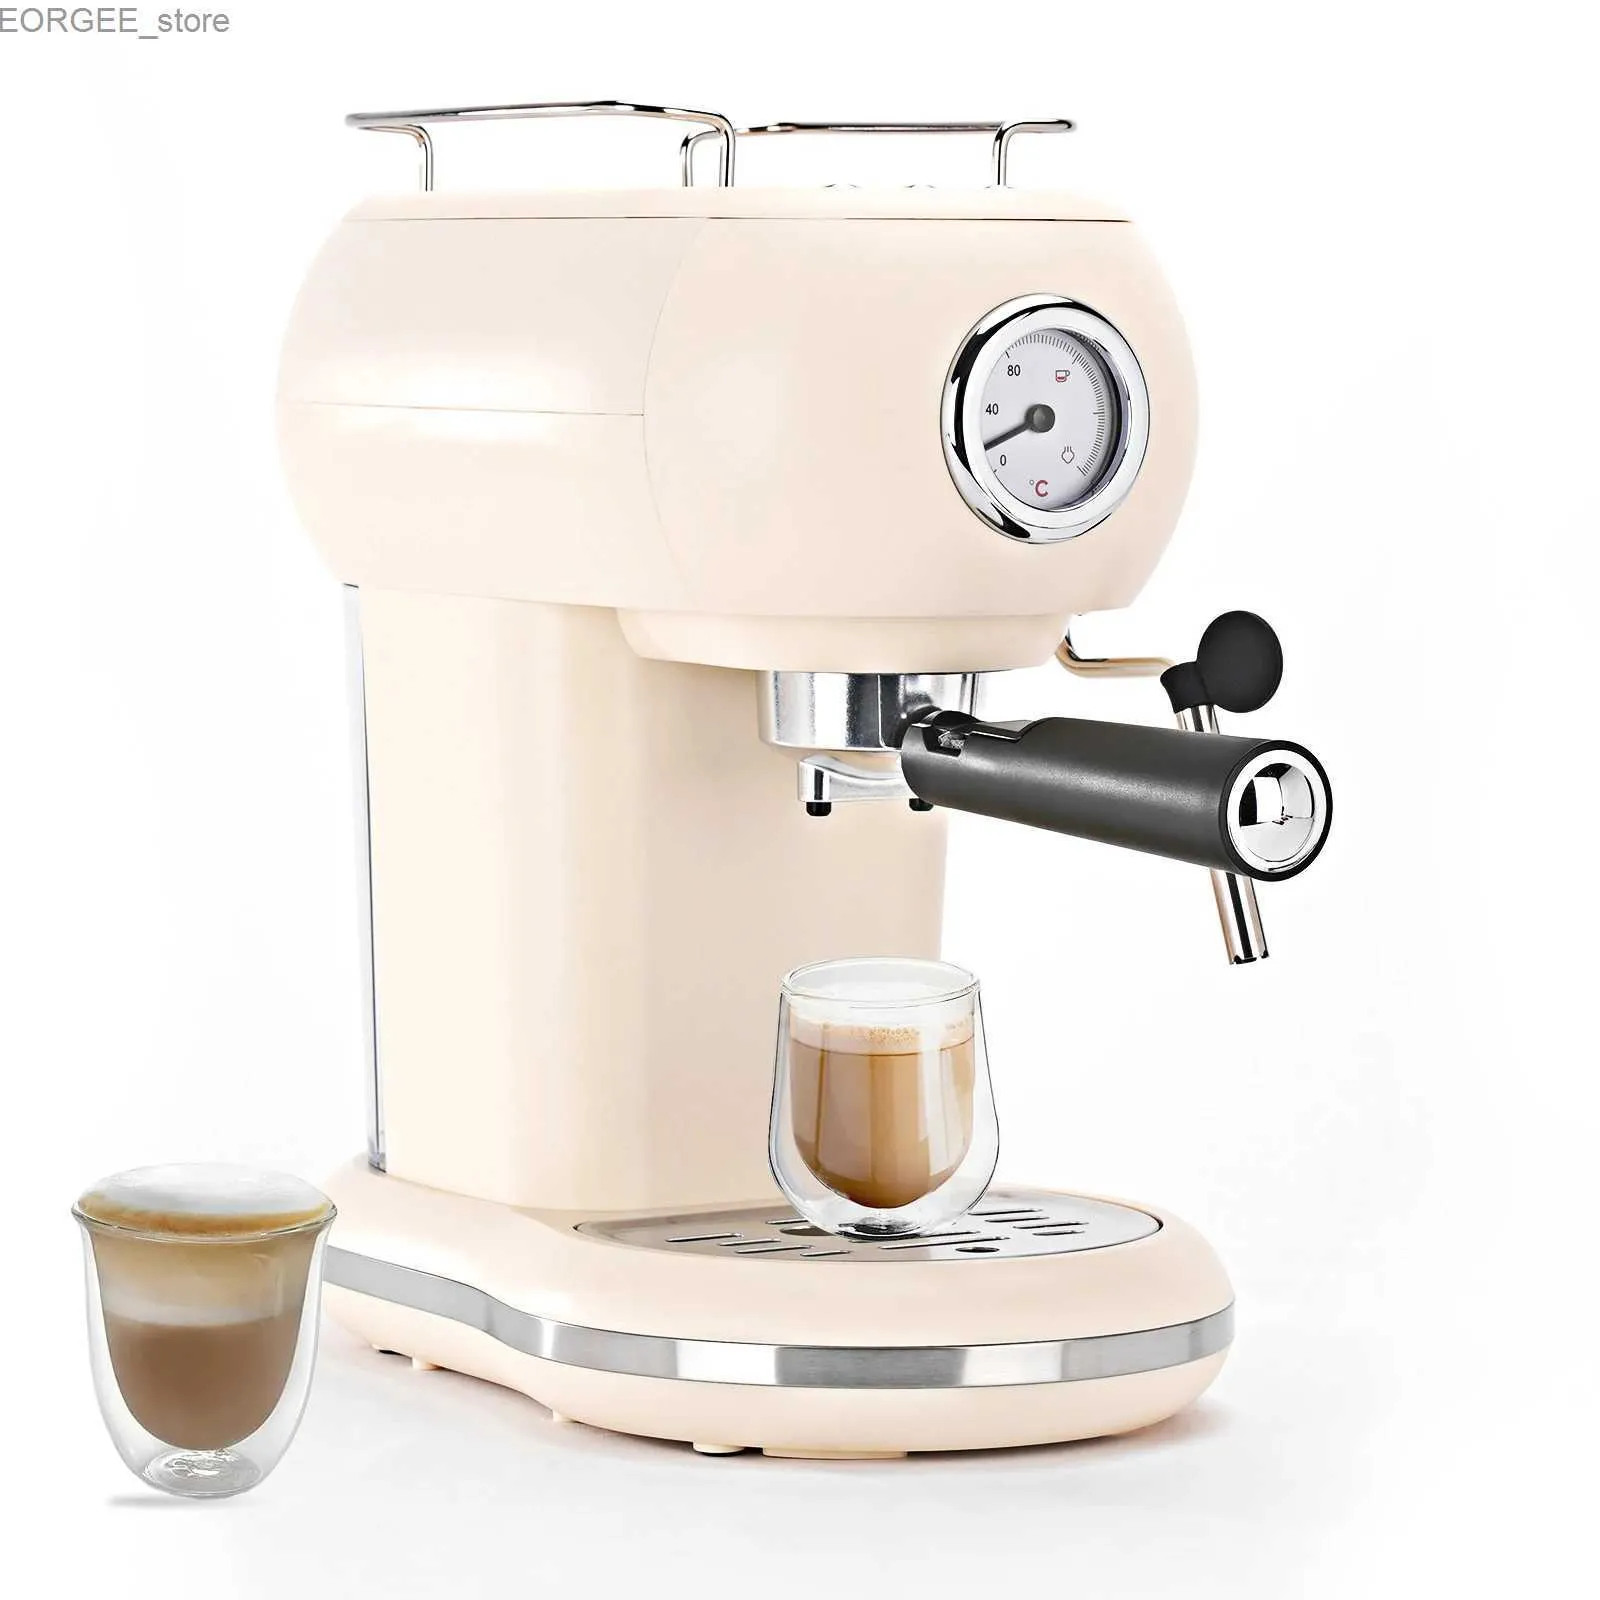 Café das cafeteiras A máquina de café expresso semiautomáticas McIlpoog de 15 bar está equipada com um poderoso motor a vapor e uma máquina de café expresso compacta para cappuccinos ou lattes y2